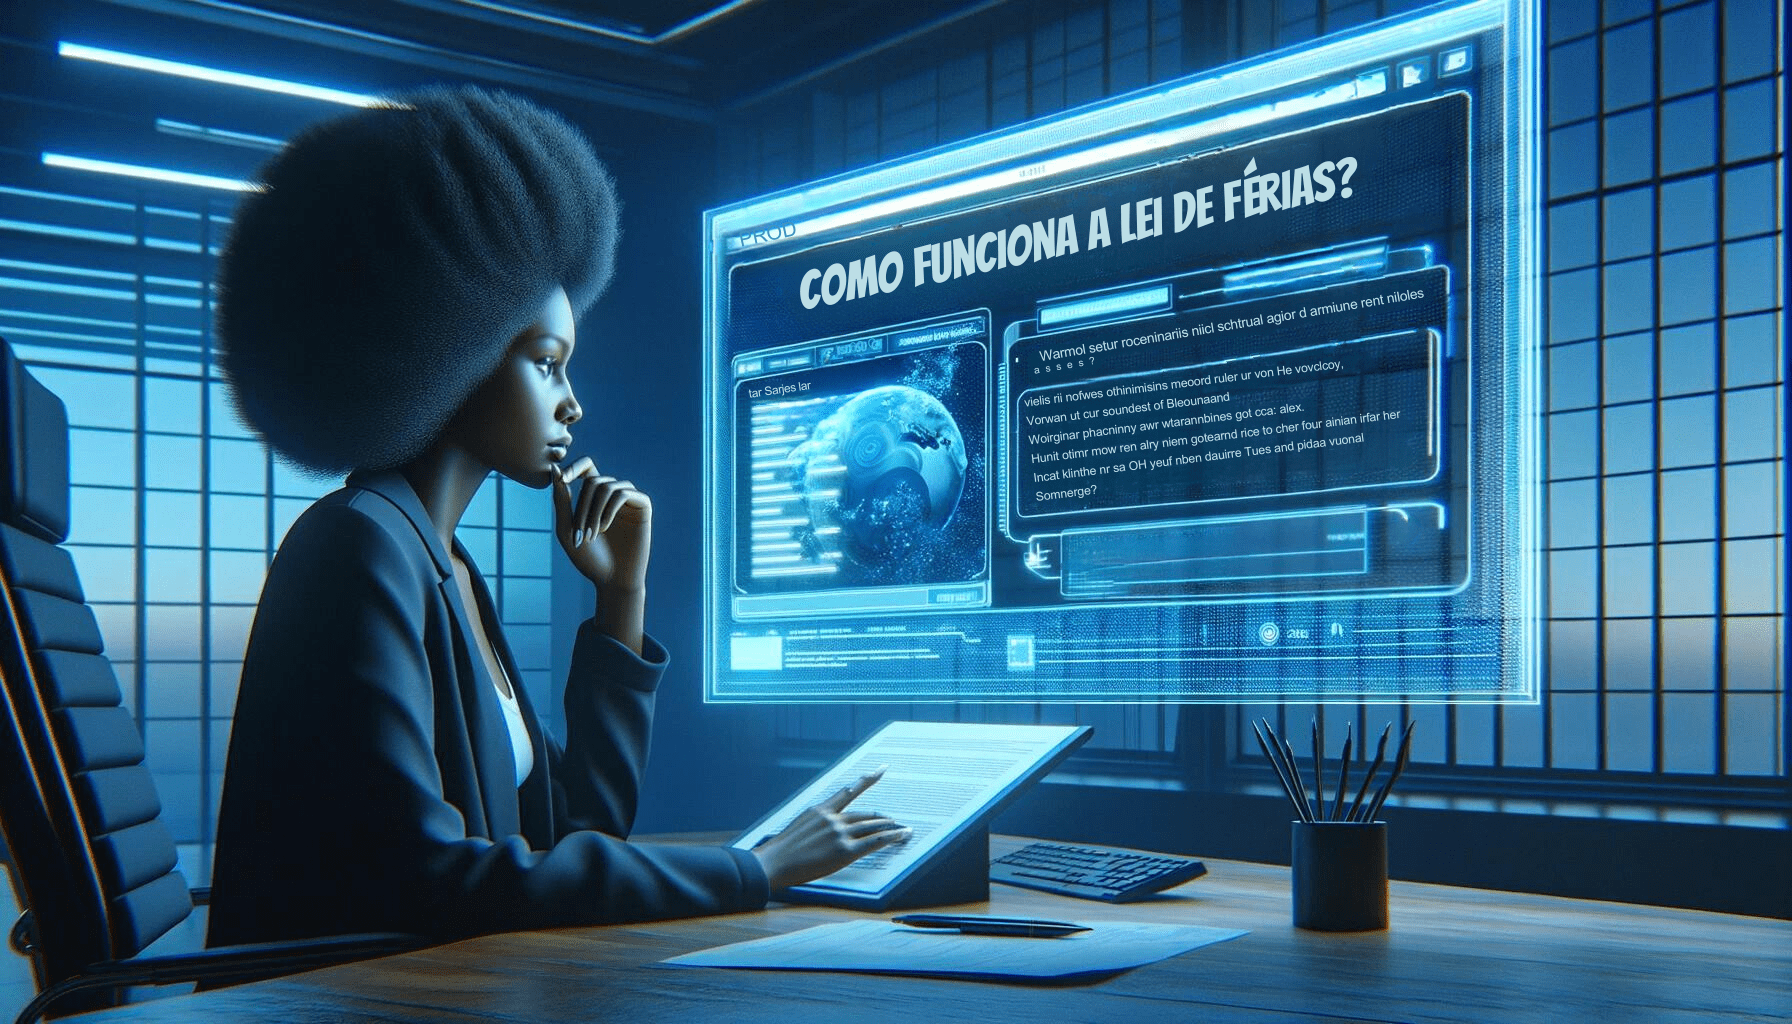 Uma mulher de ascendência africana analisa detalhes da lei de férias em uma tela digital interativa dentro de um escritório futurista minimalista.